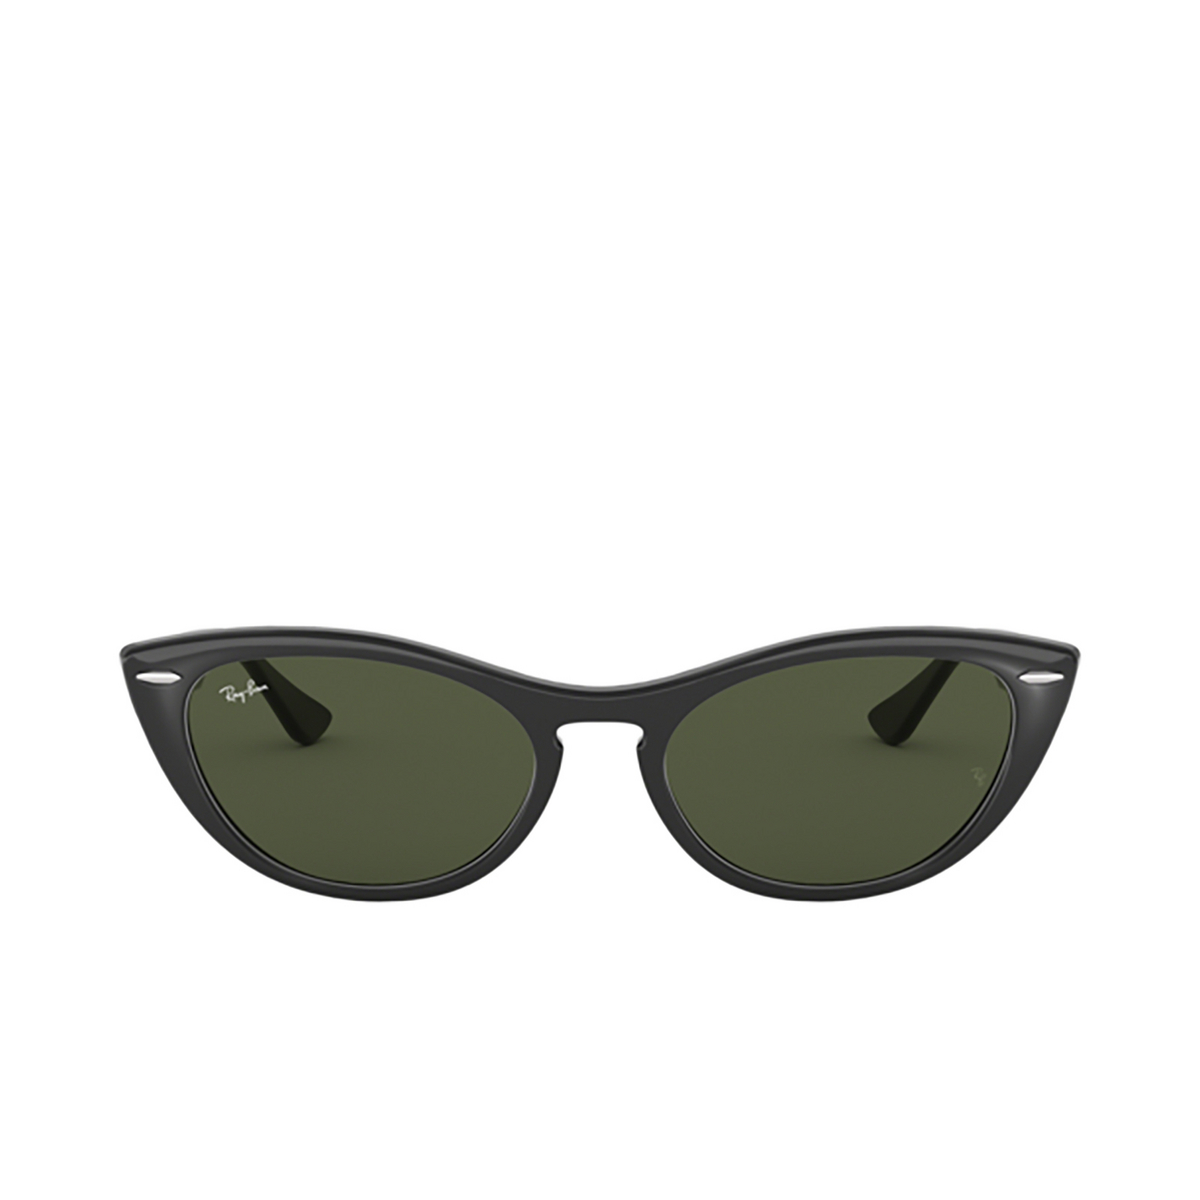 Ray-Ban NINA Sunglasses 601/31 Black - front view